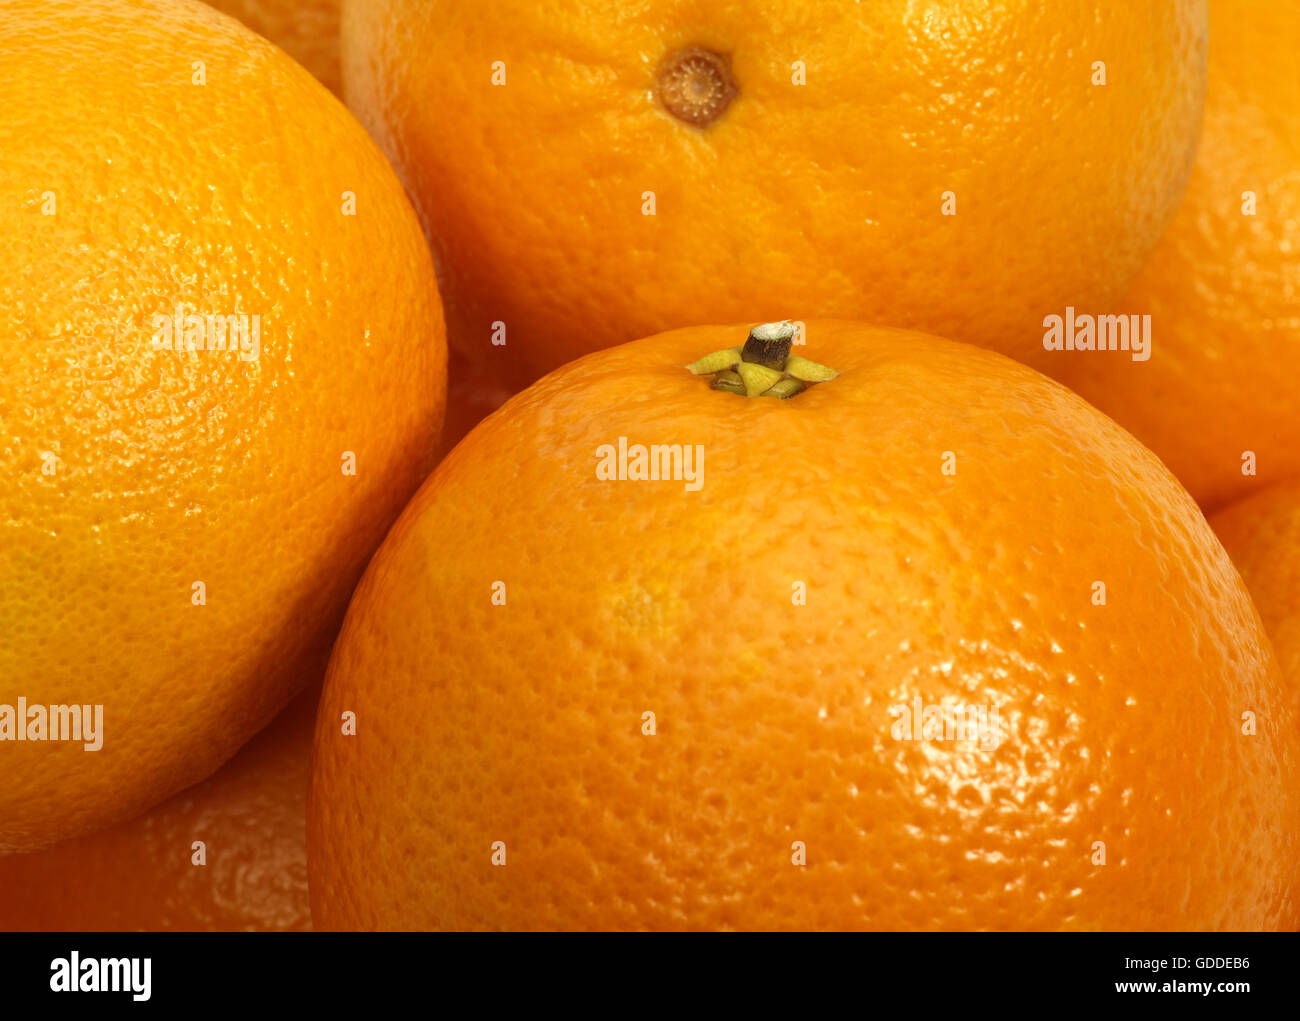 Orange, citrus sinensis Stock Photo